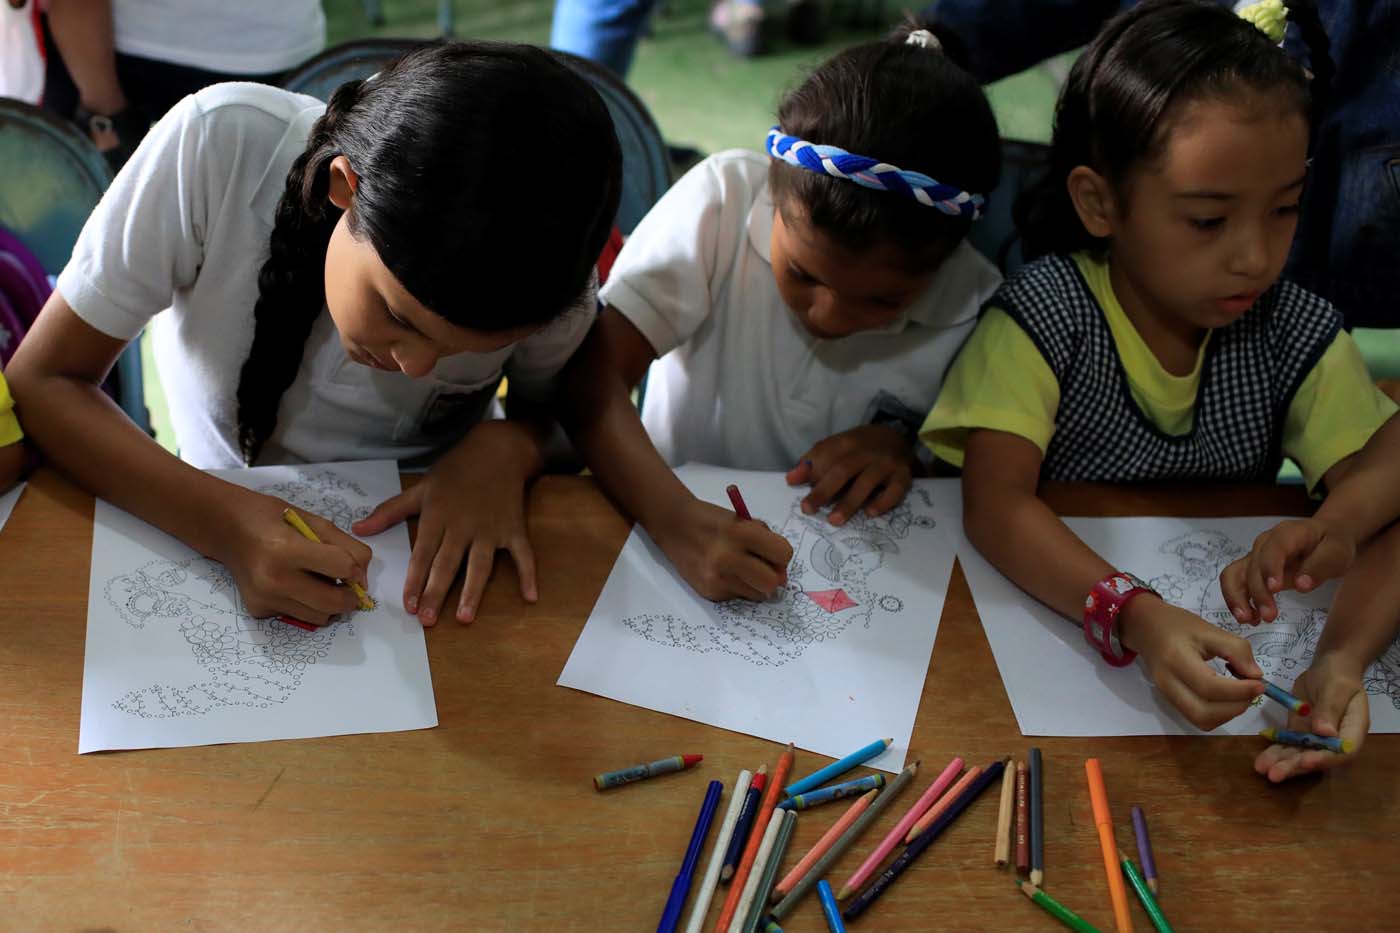 El costo de la canasta básica escolar superó 1,35 millardos de bolívares